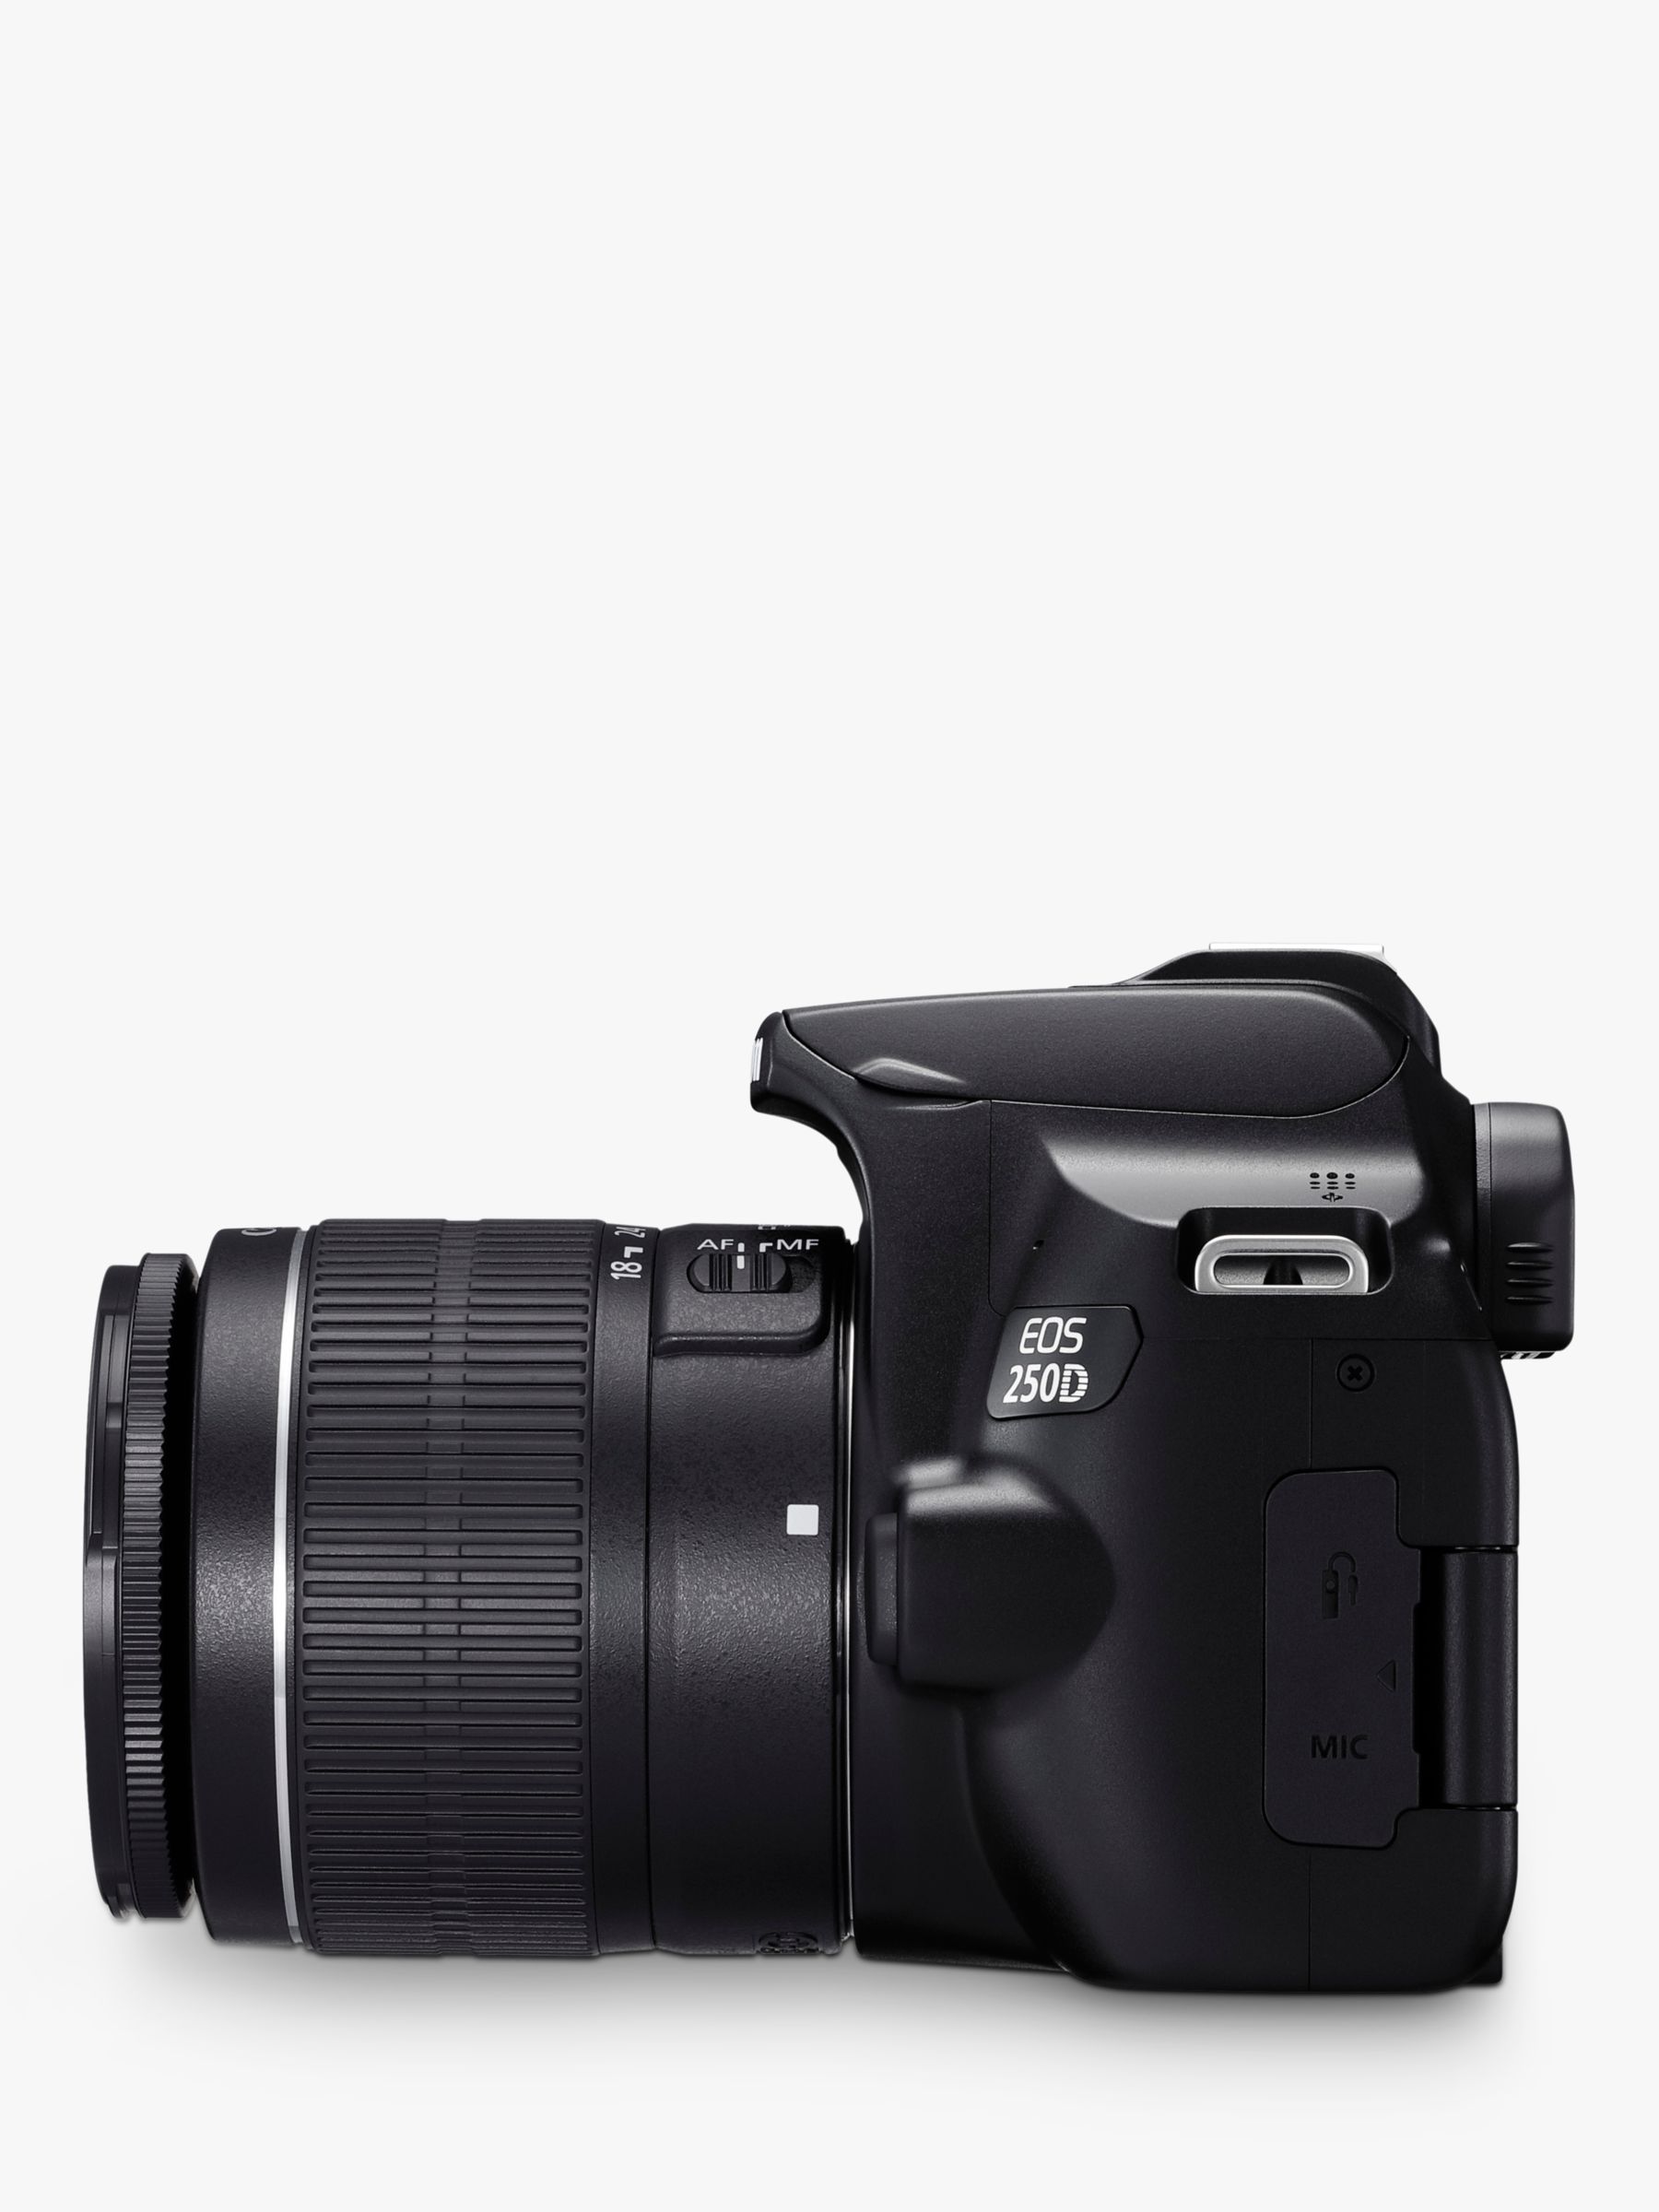 Canon EOS 250D - Cameras - Canon UK